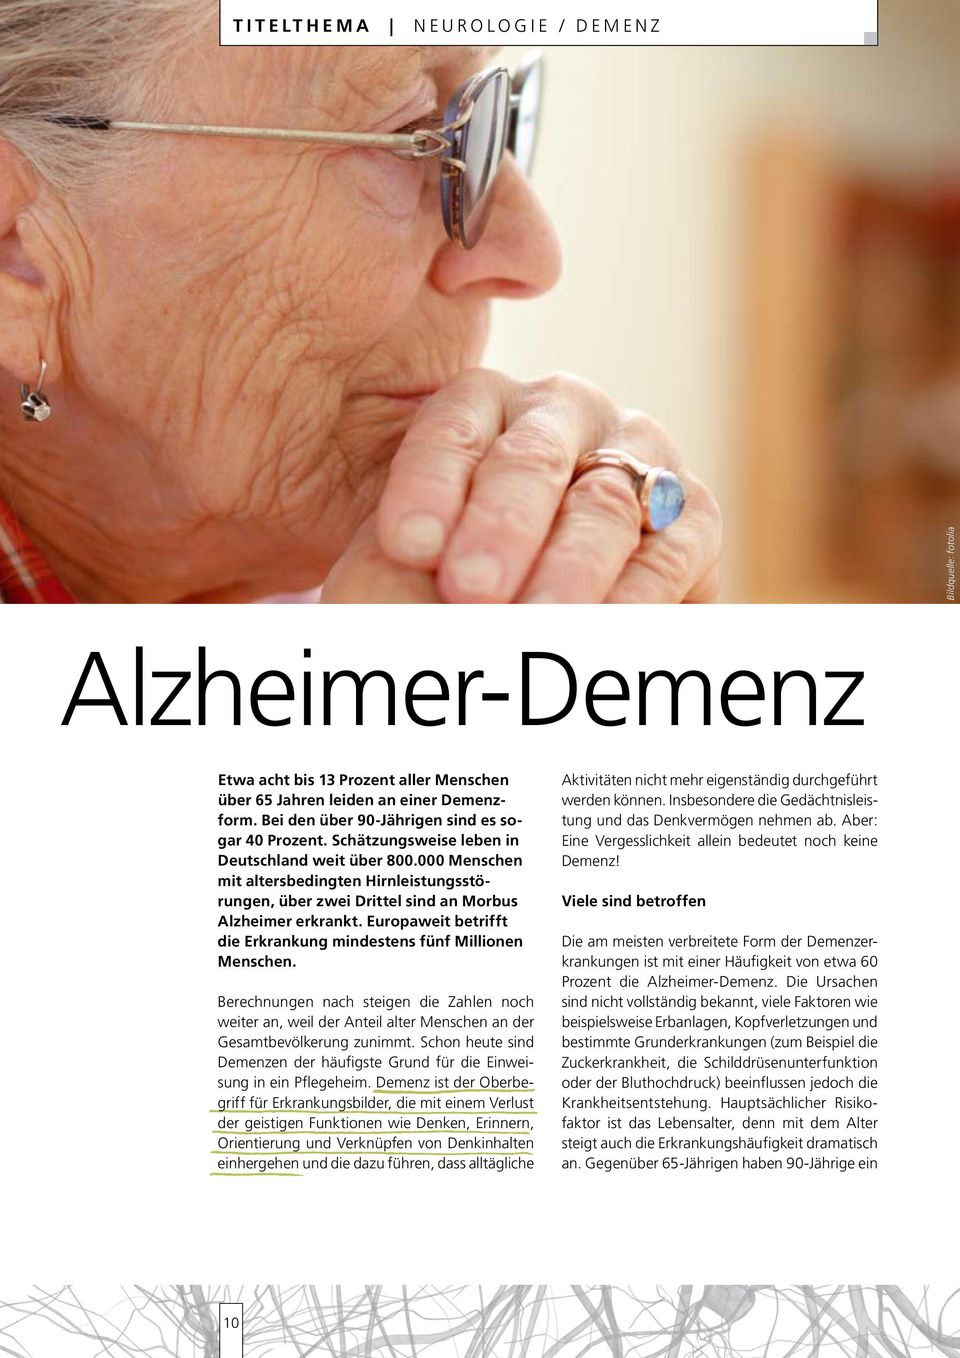 000 Menschen mit altersbedingten Hirnleistungsstörungen, über zwei Drittel sind an Morbus Alzheimer erkrankt. Europaweit betrifft die Erkrankung mindestens fünf Millionen Menschen.